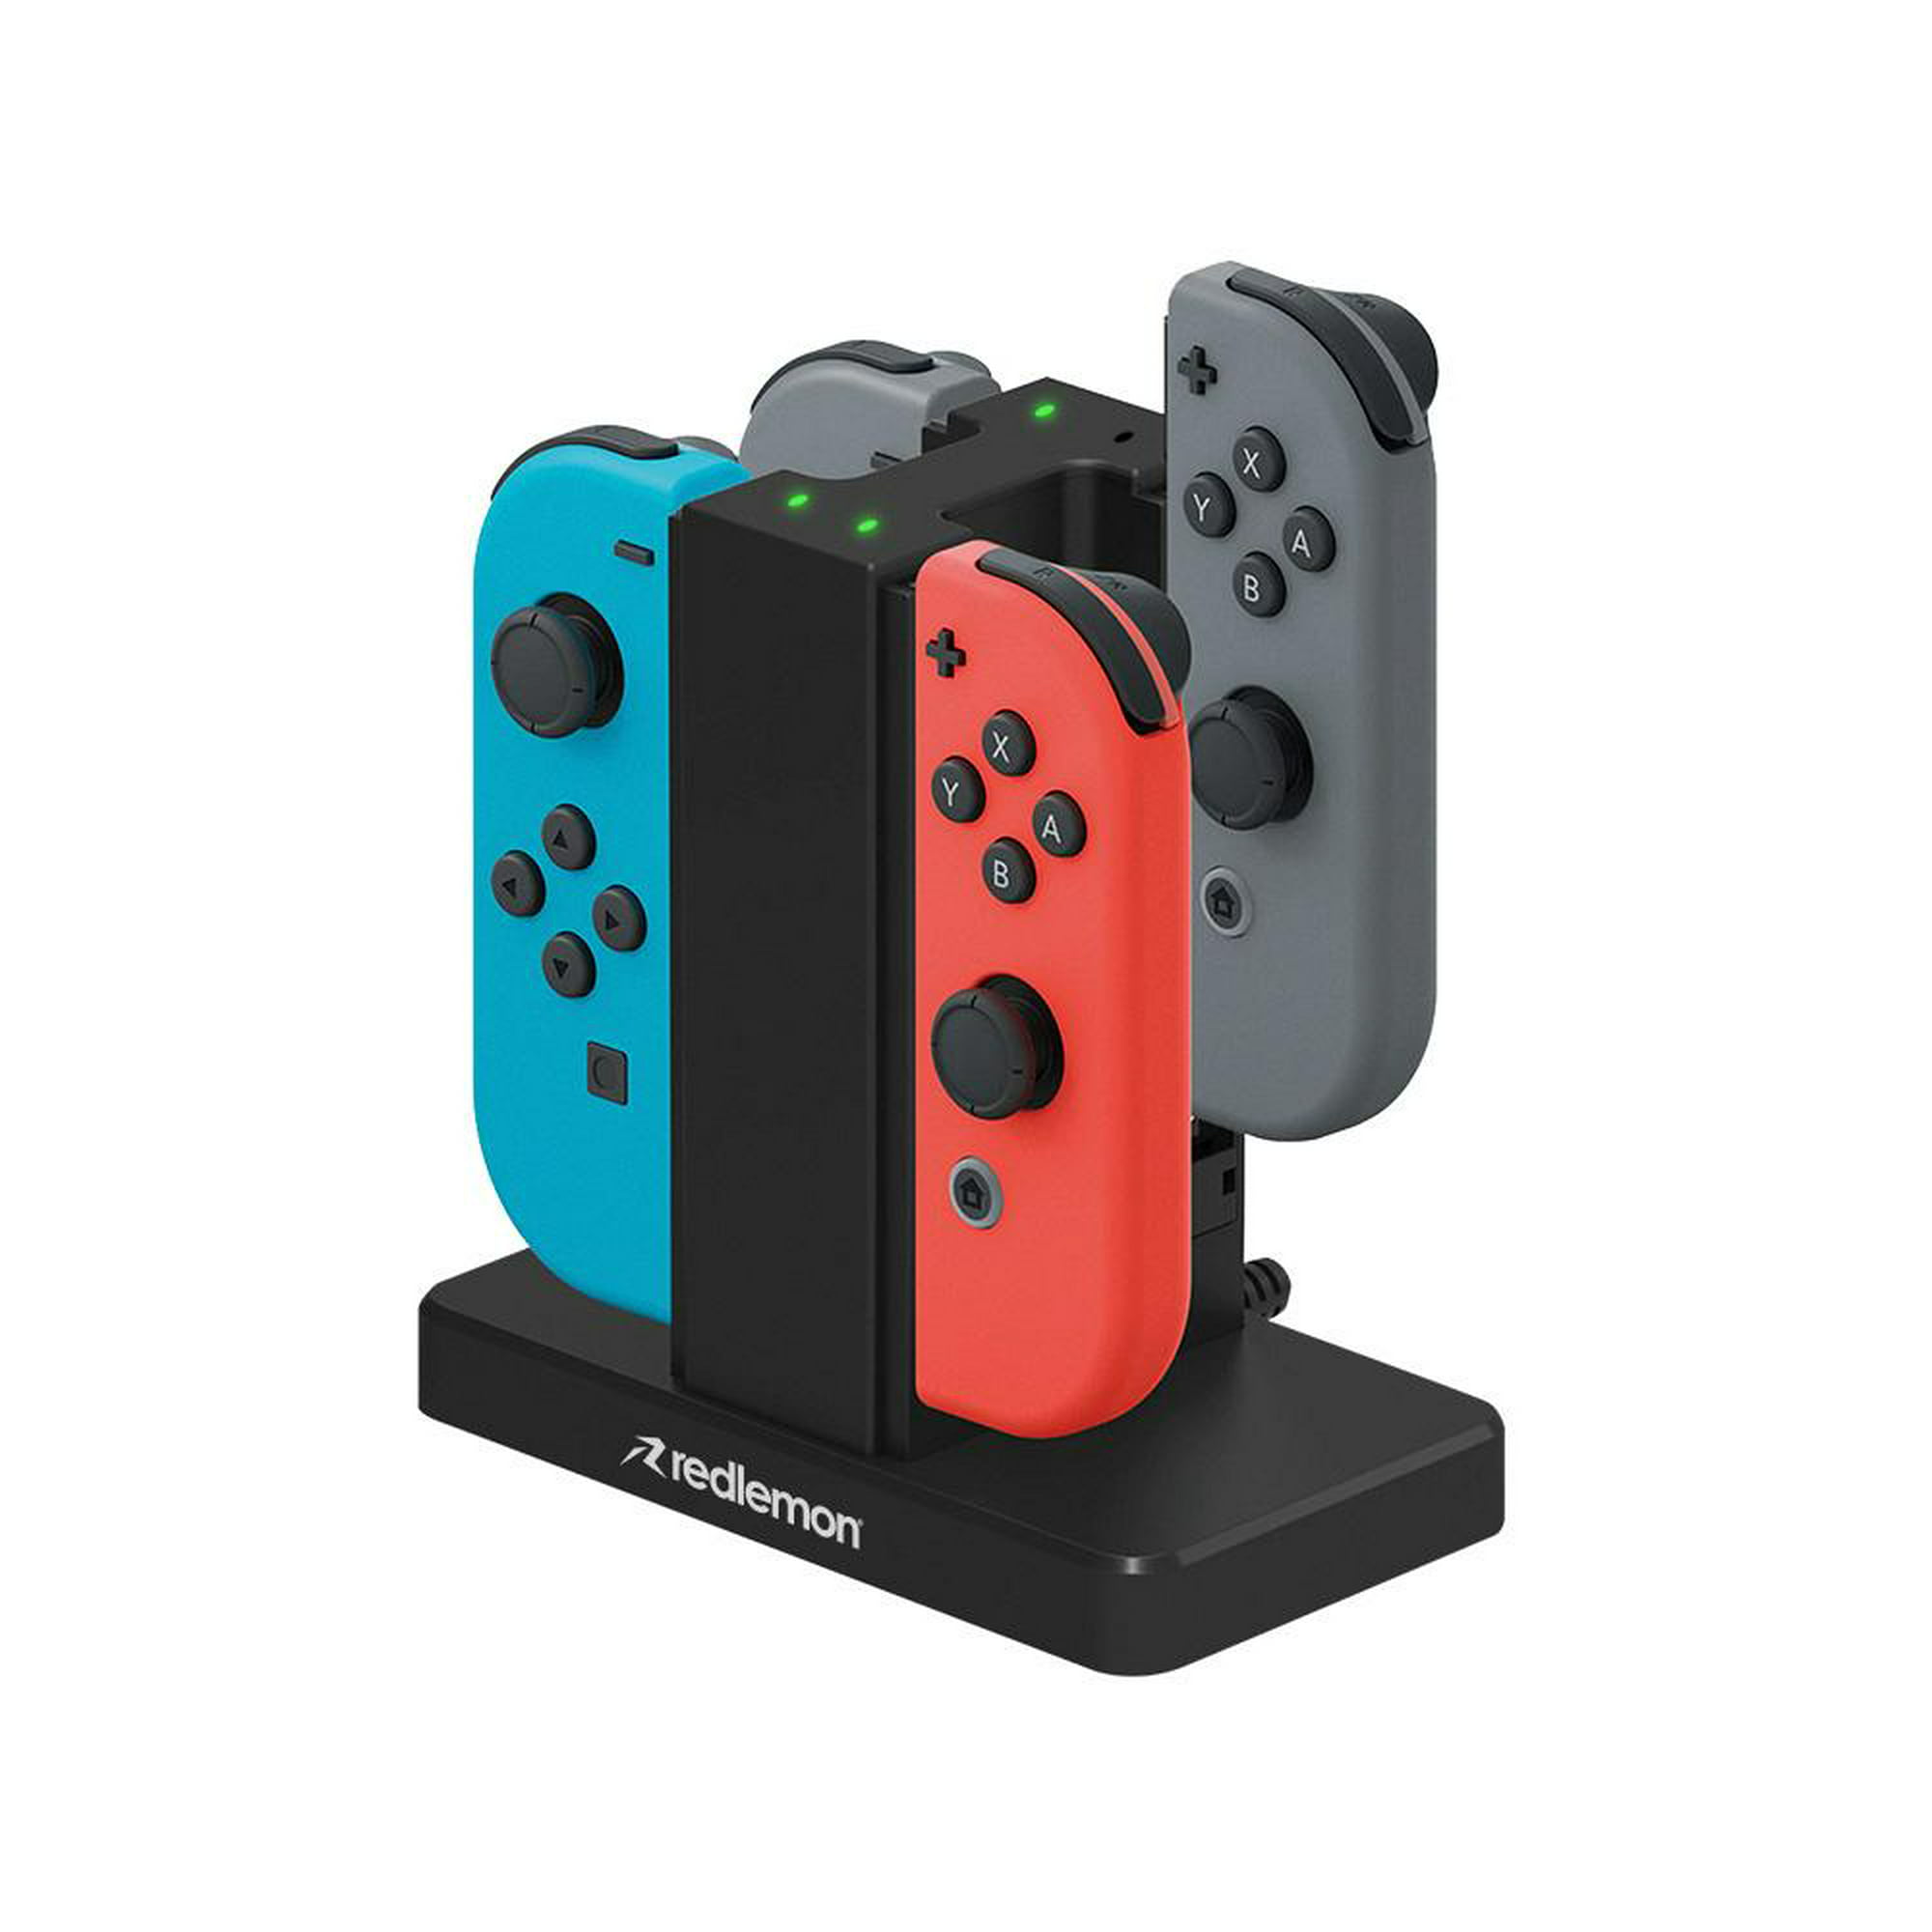 Cargador para Controles Redlemon Joy-Con de Nintendo Switch 2 pares